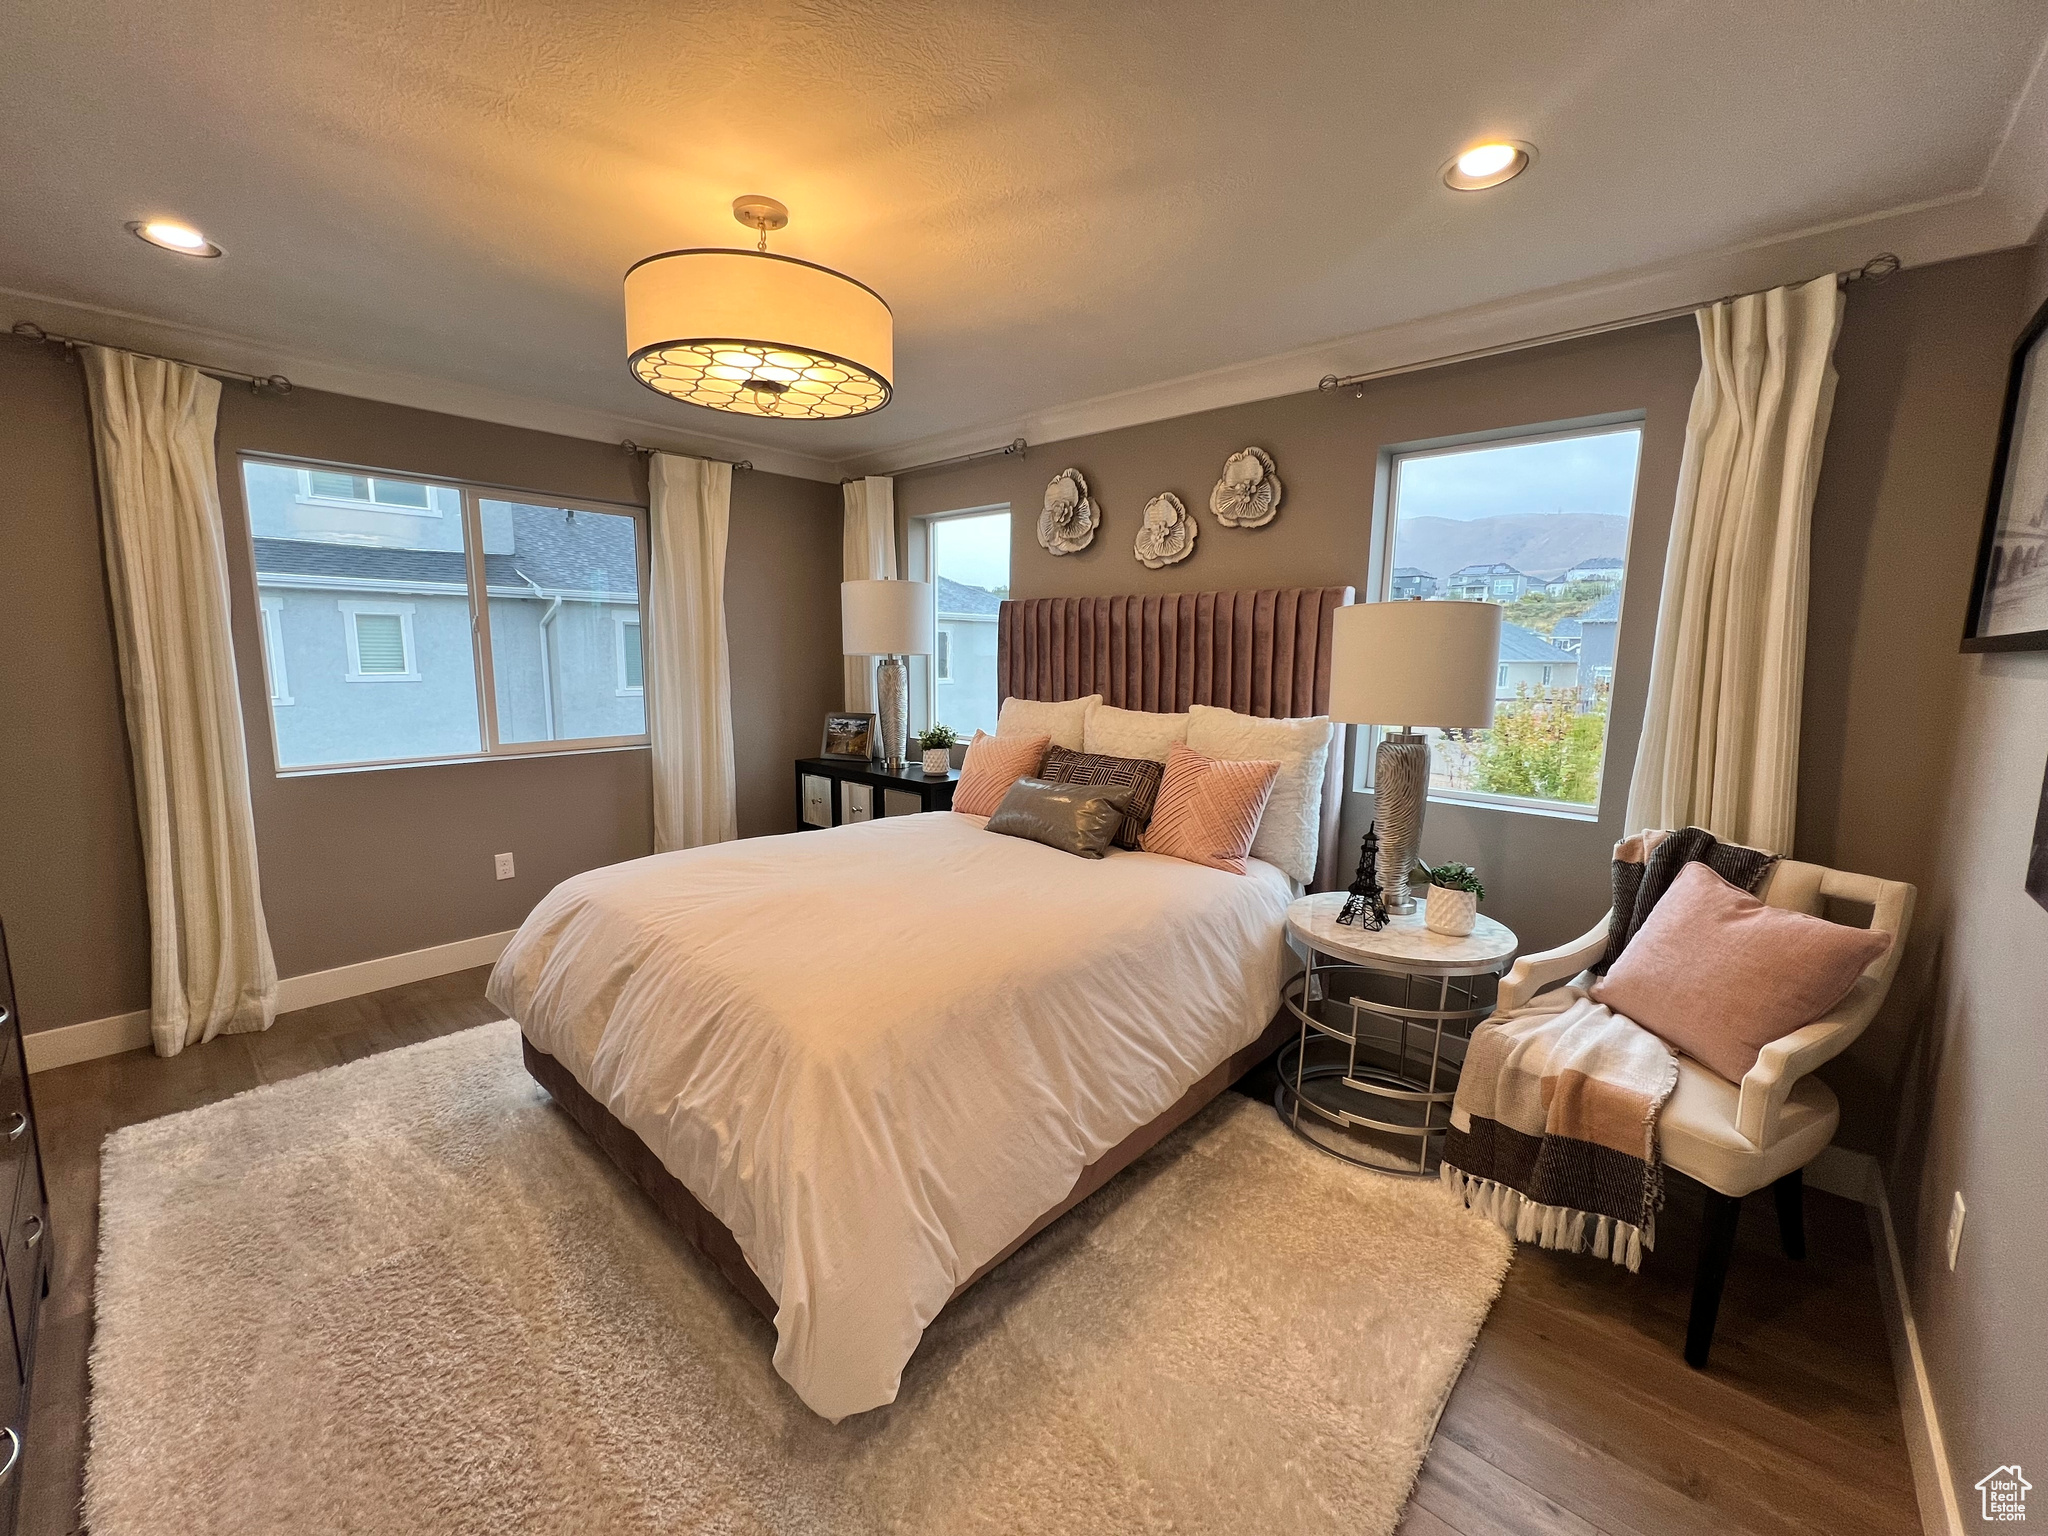 Bedroom featuring hardwood / wood-style floors and multiple windows